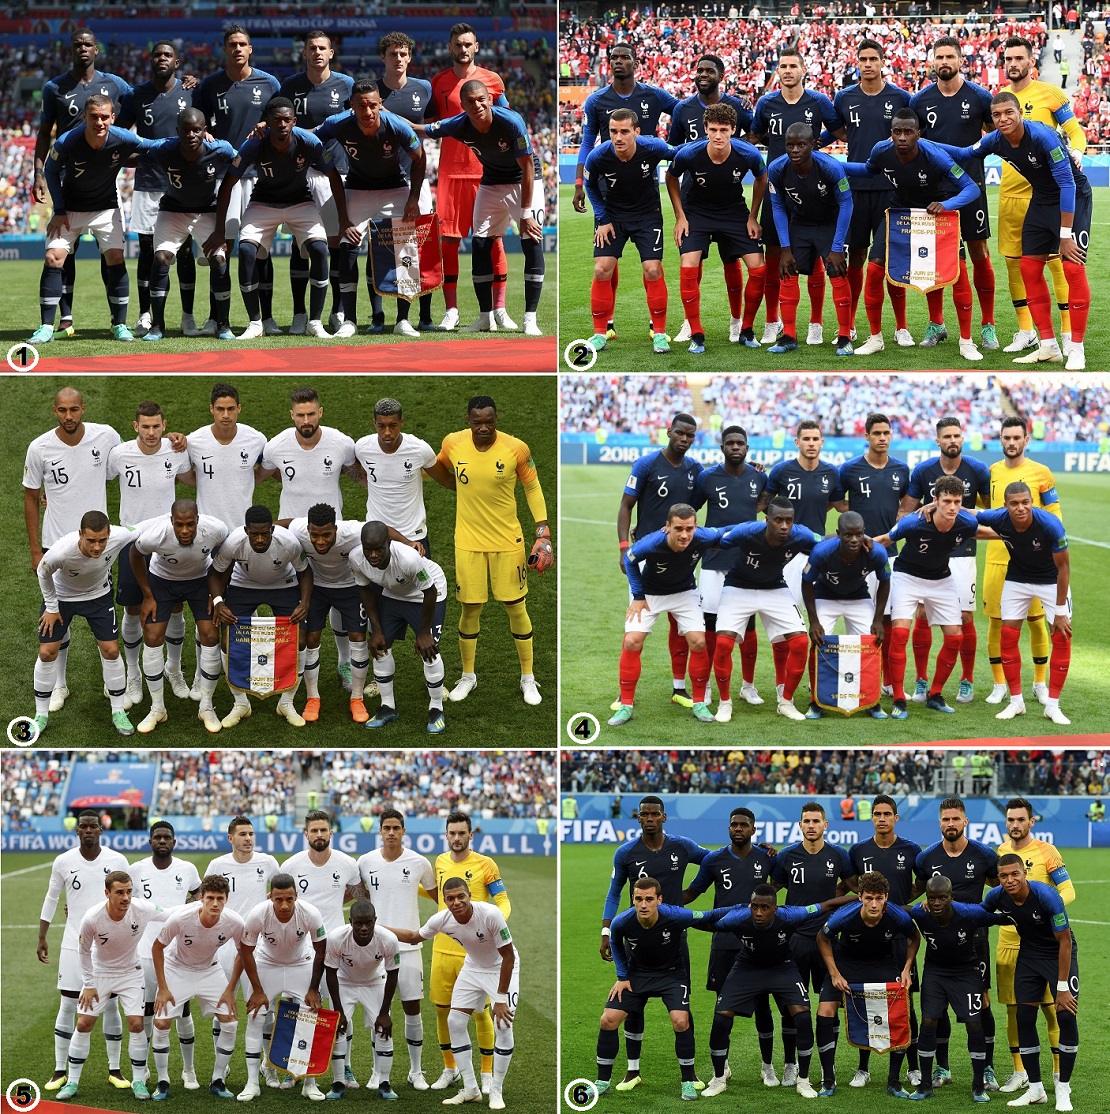 Por qué Francia no repetía combinaciones los uniformes Mundial? | Fútbol | Deportes | El Universo